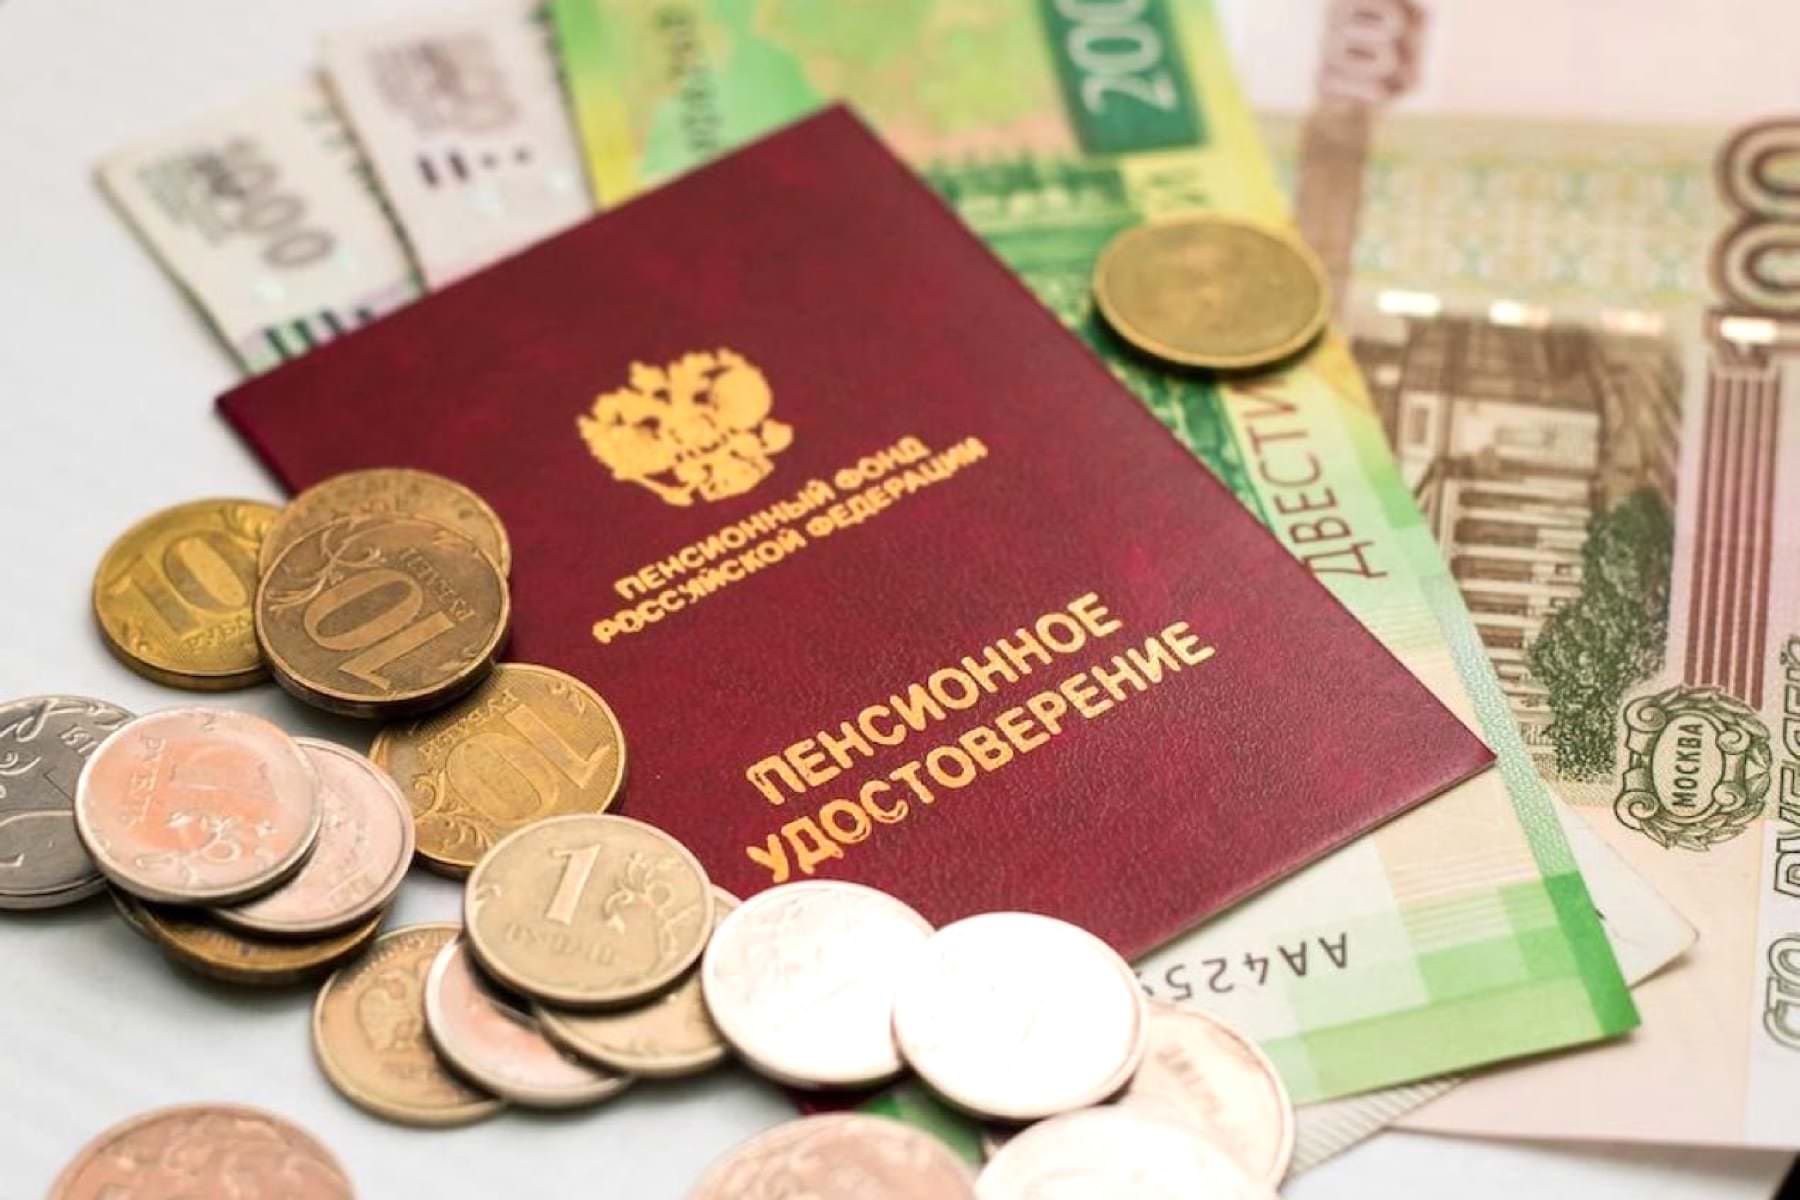 Внеплановая прибавка. С 1 апреля изменится размер пенсии десятков миллионов россиян